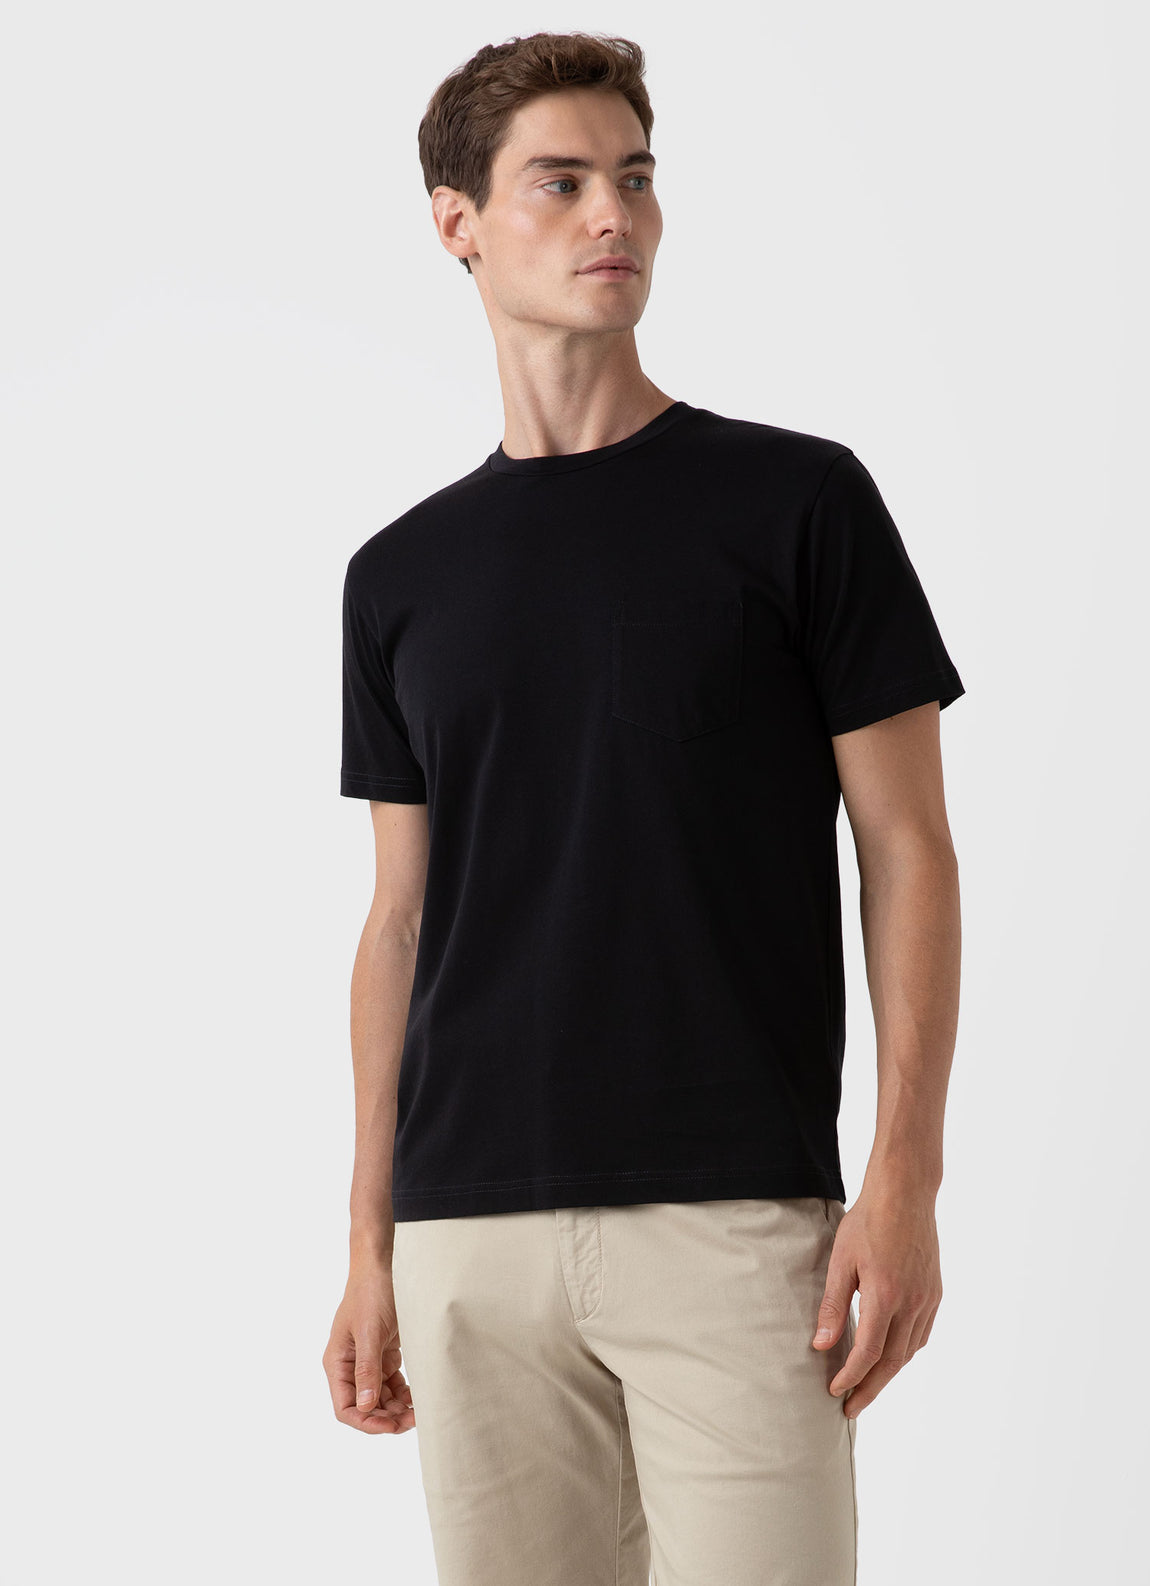 Men's Riviera Pocket T-shirt in Black | Sunspel